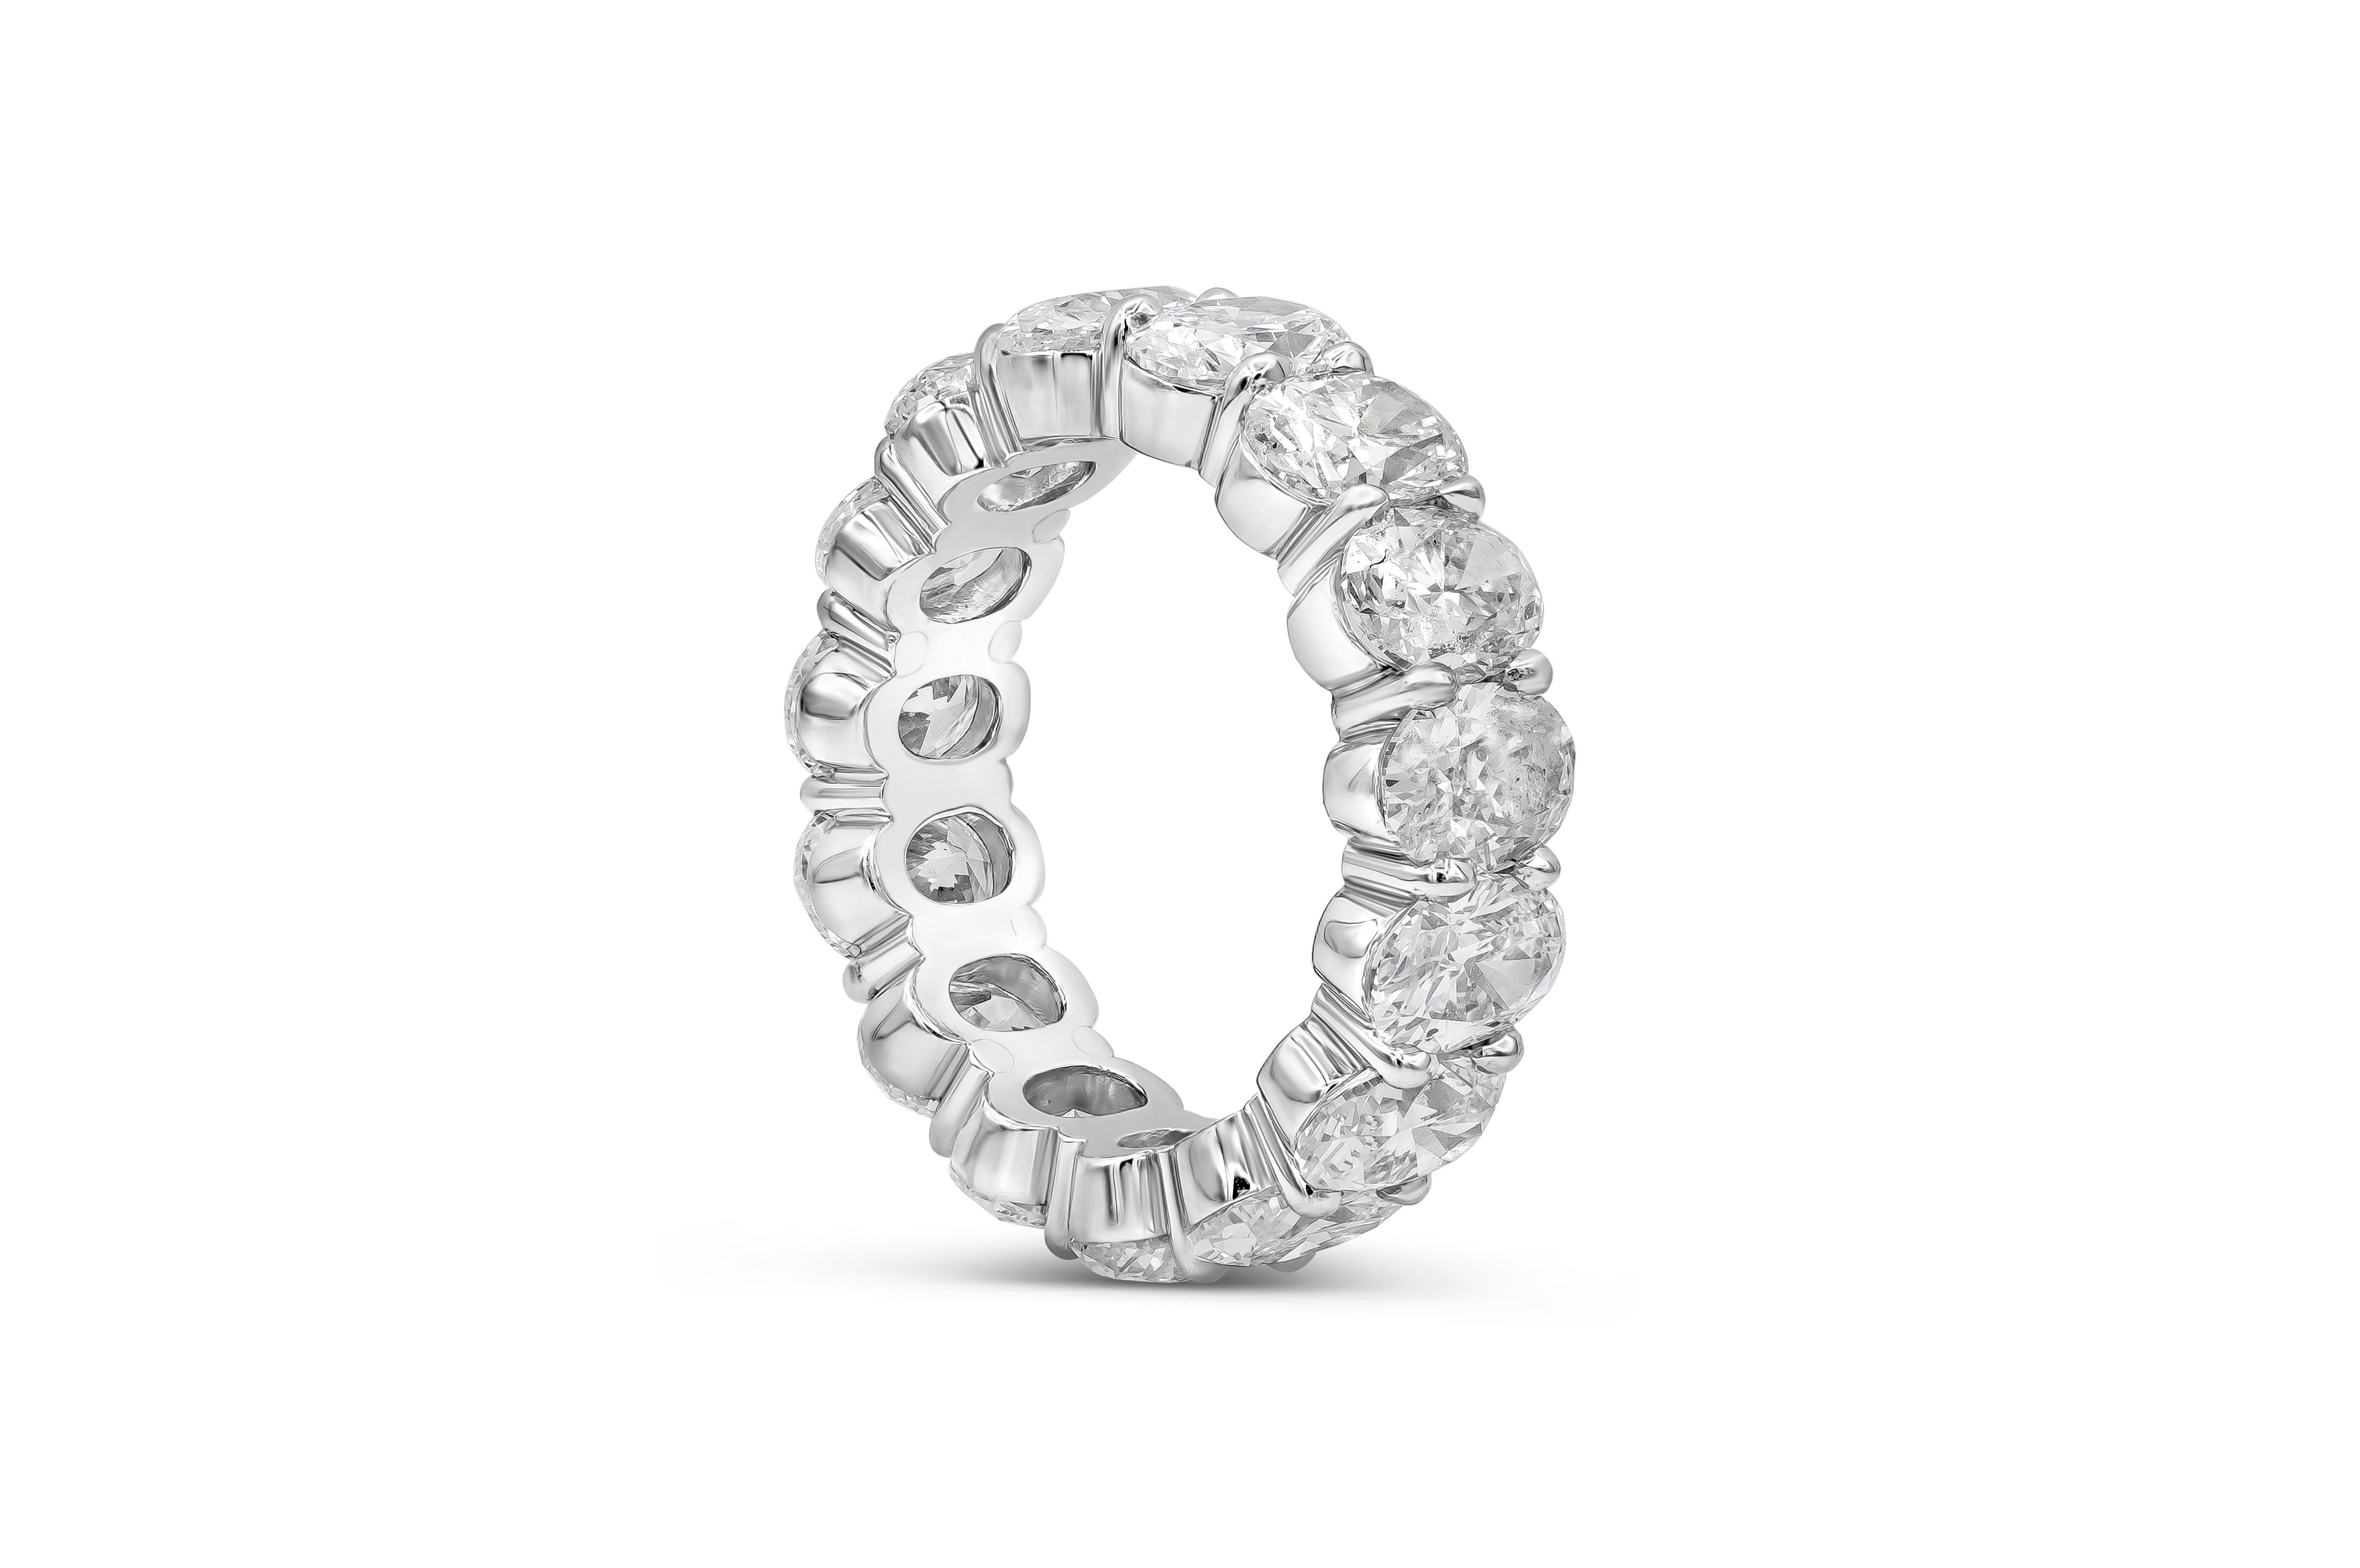 Ein wichtiger und wunderbarer Ehering mit einer Reihe von 15 Diamanten im ovalen Brillantschliff. Die Diamanten wiegen insgesamt 7,91 Karat, Farbe F, Reinheit SI. Hergestellt mit Platin Größe 6.25 US

Roman Malakov ist ein Unternehmen, das sich